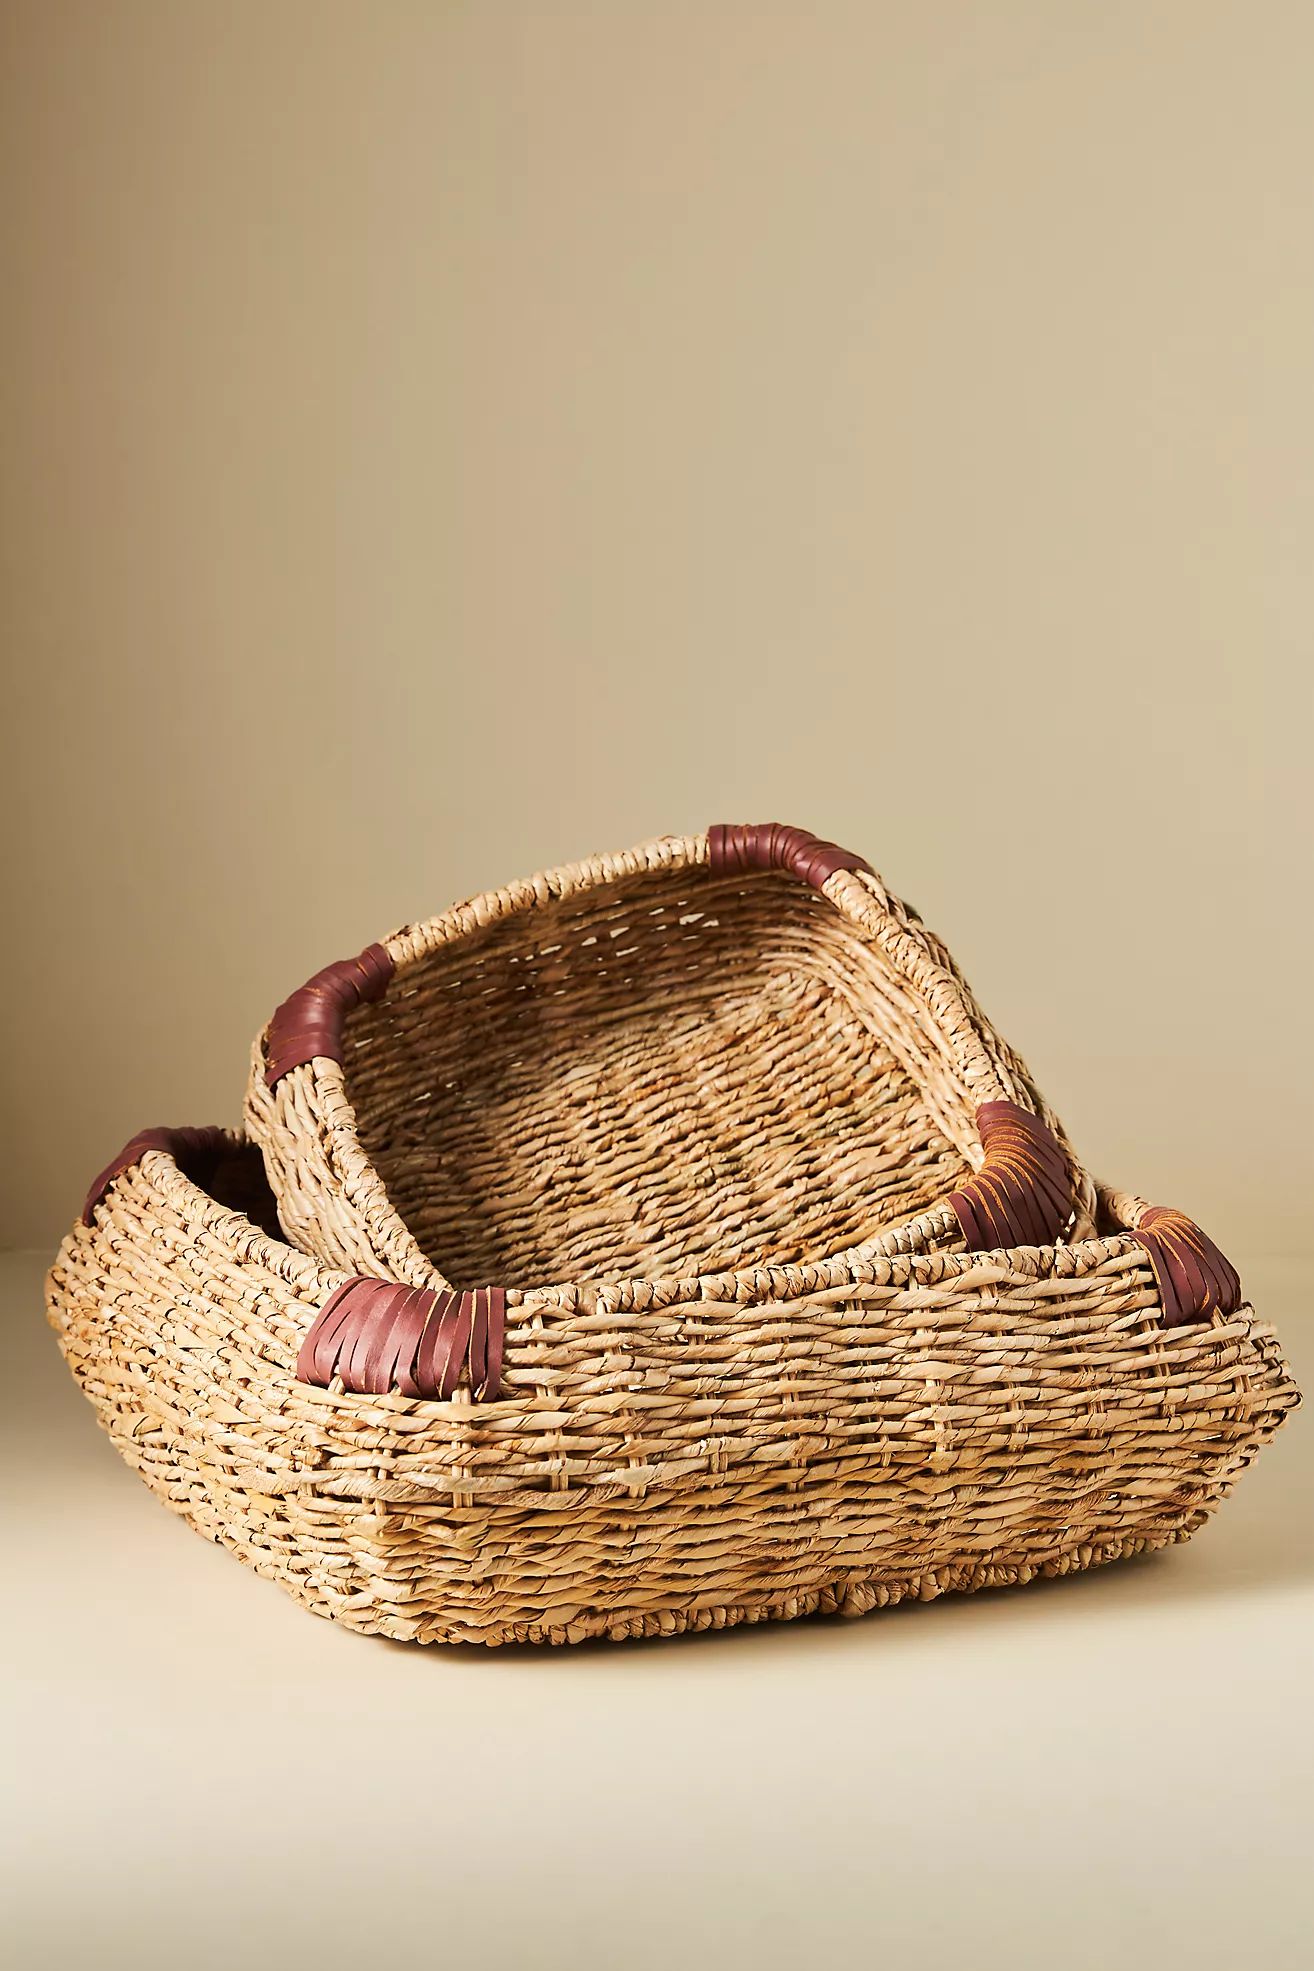 Kalas Low Baskets, Set of 2 | Anthropologie (US)